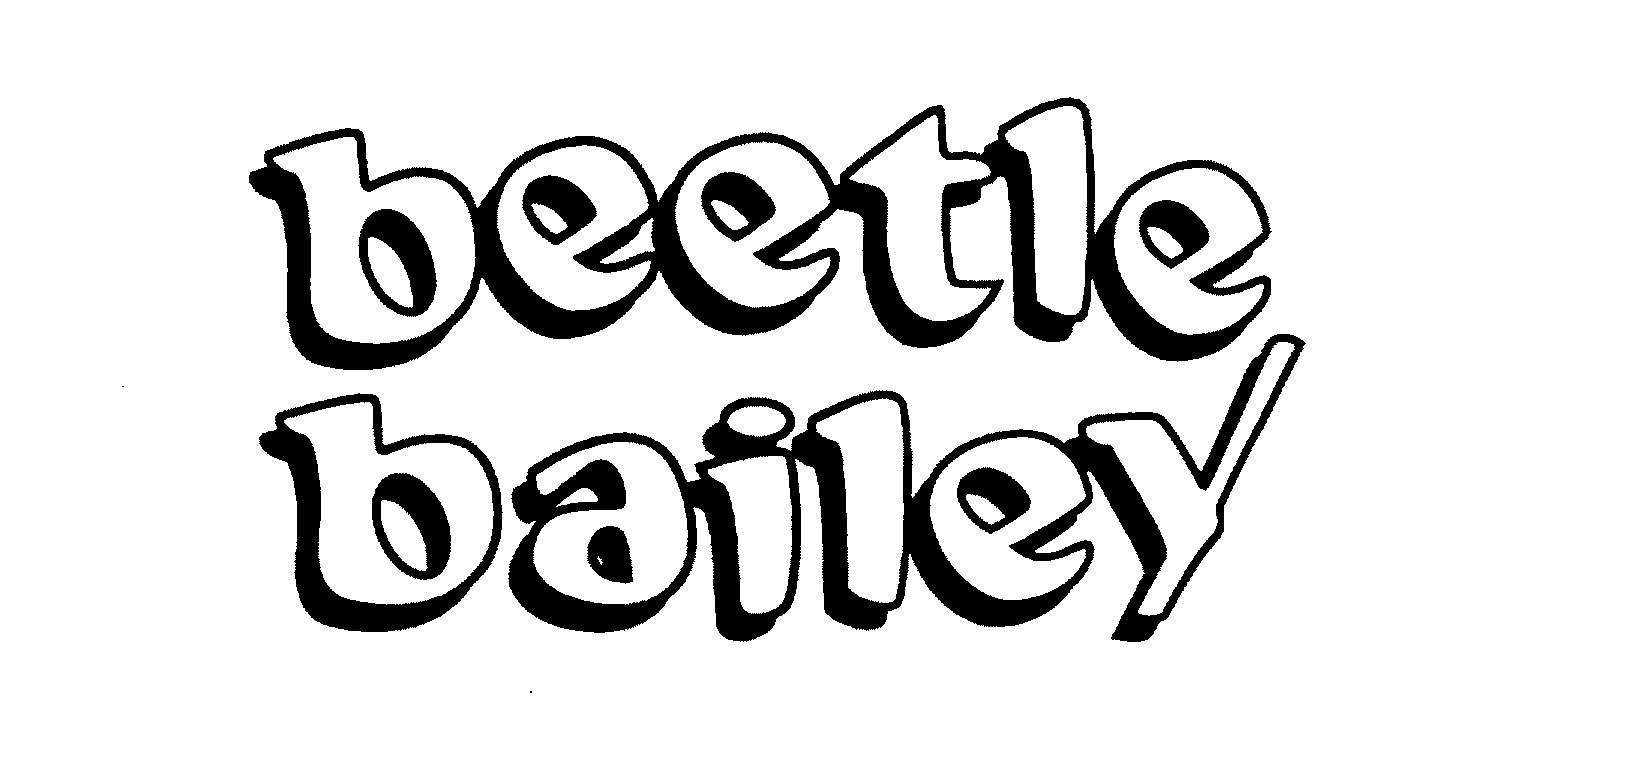  BEETLE BAILEY